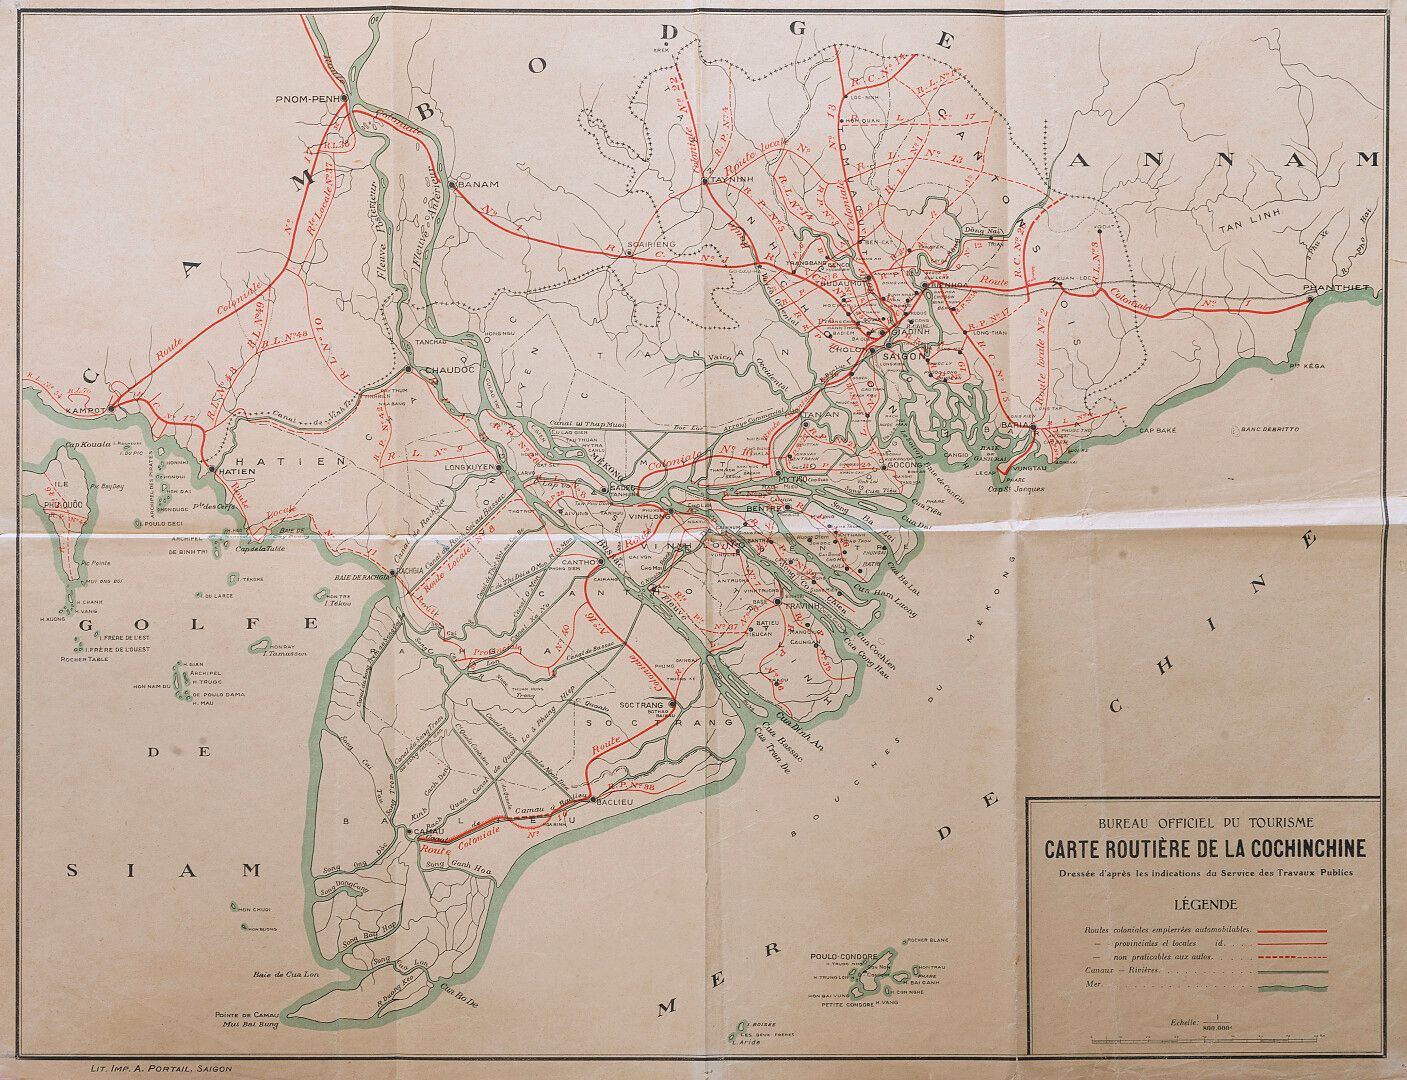 Null S.D. (hacia 1930)

Mapa de carreteras de Cochinchina publicado por la Ofici&hellip;